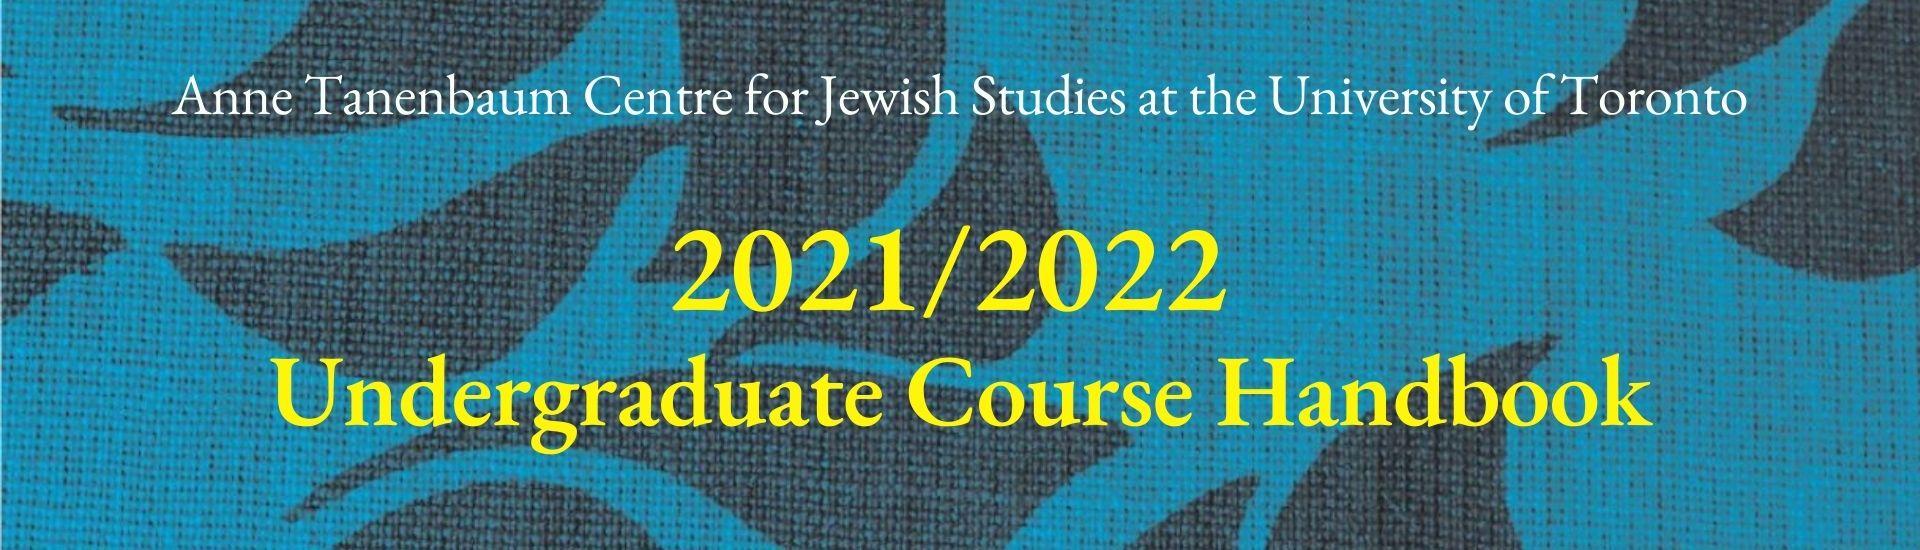 ATCJS 2021/22 Undergraduate Course Handbook Title page